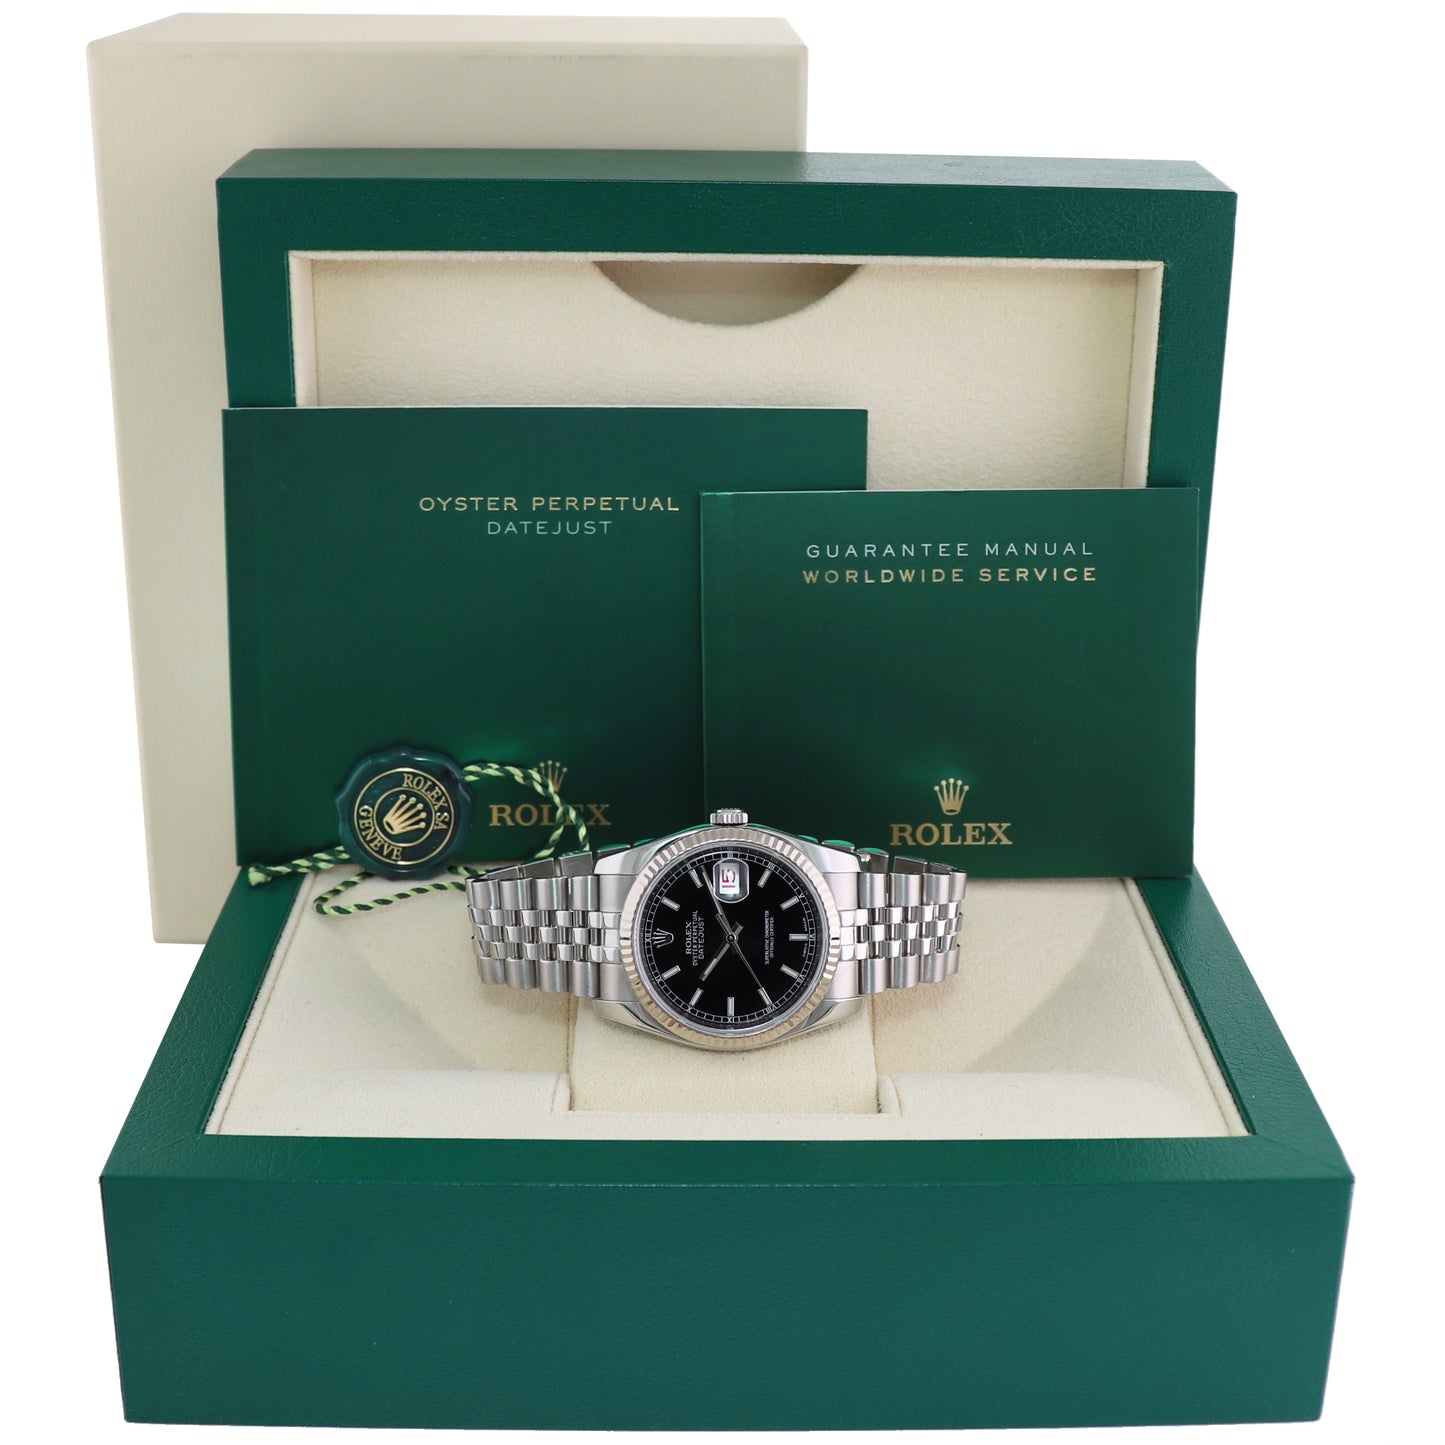 2015 Rolex DateJust Steel Black Roman 116234 36mm Stainless Steel Super Jubilee Watch